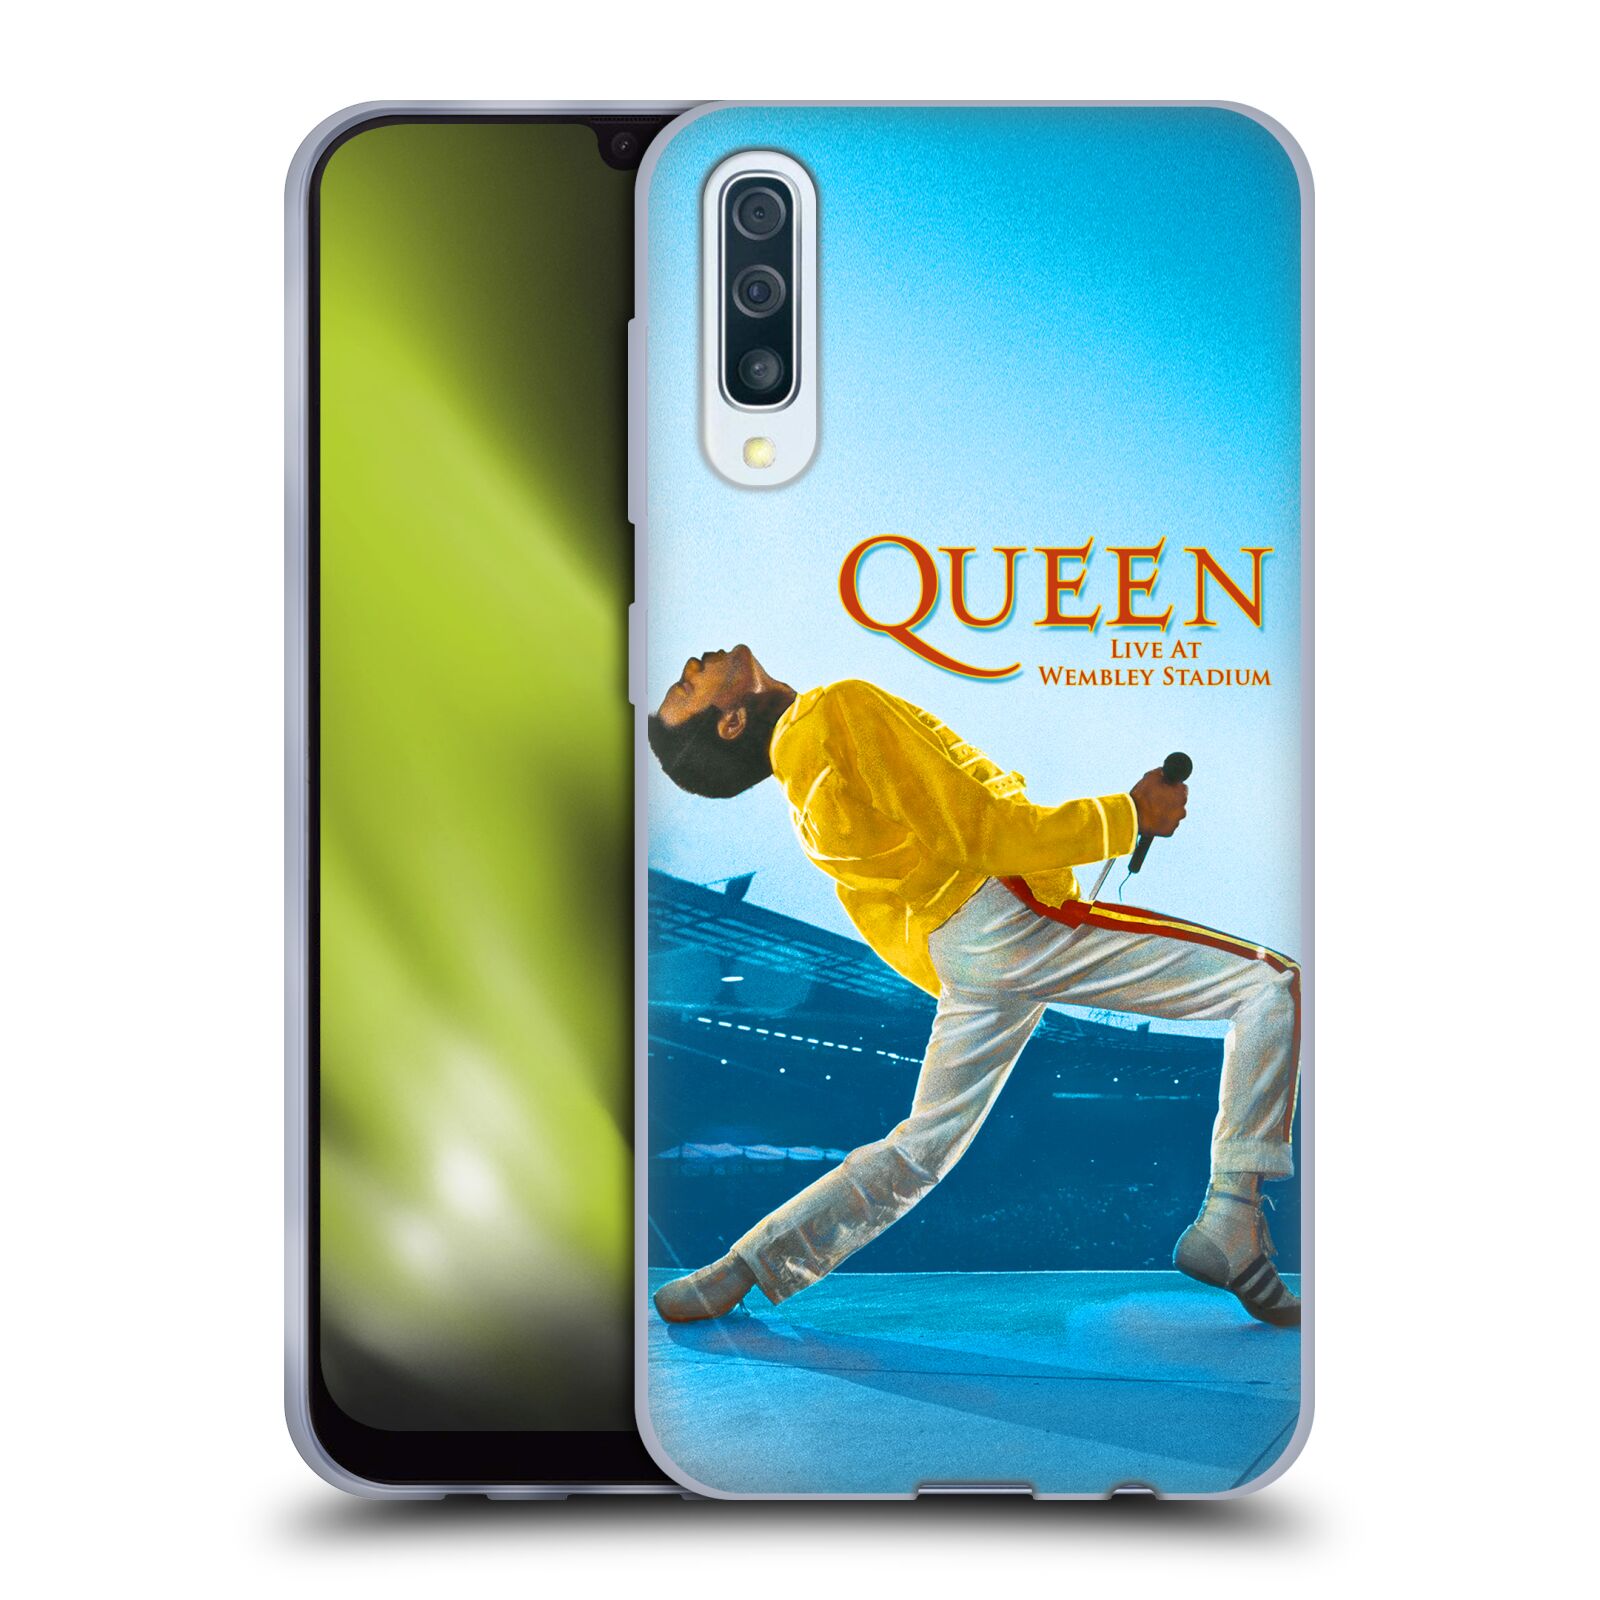 Silikonové pouzdro na mobil Samsung Galaxy A50 / A30s - Head Case - Queen - Freddie Mercury (Silikonový kryt, obal, pouzdro na mobilní telefon Samsung Galaxy A50 / A30s z roku 2019 s motivem Queen - Freddie Mercury)